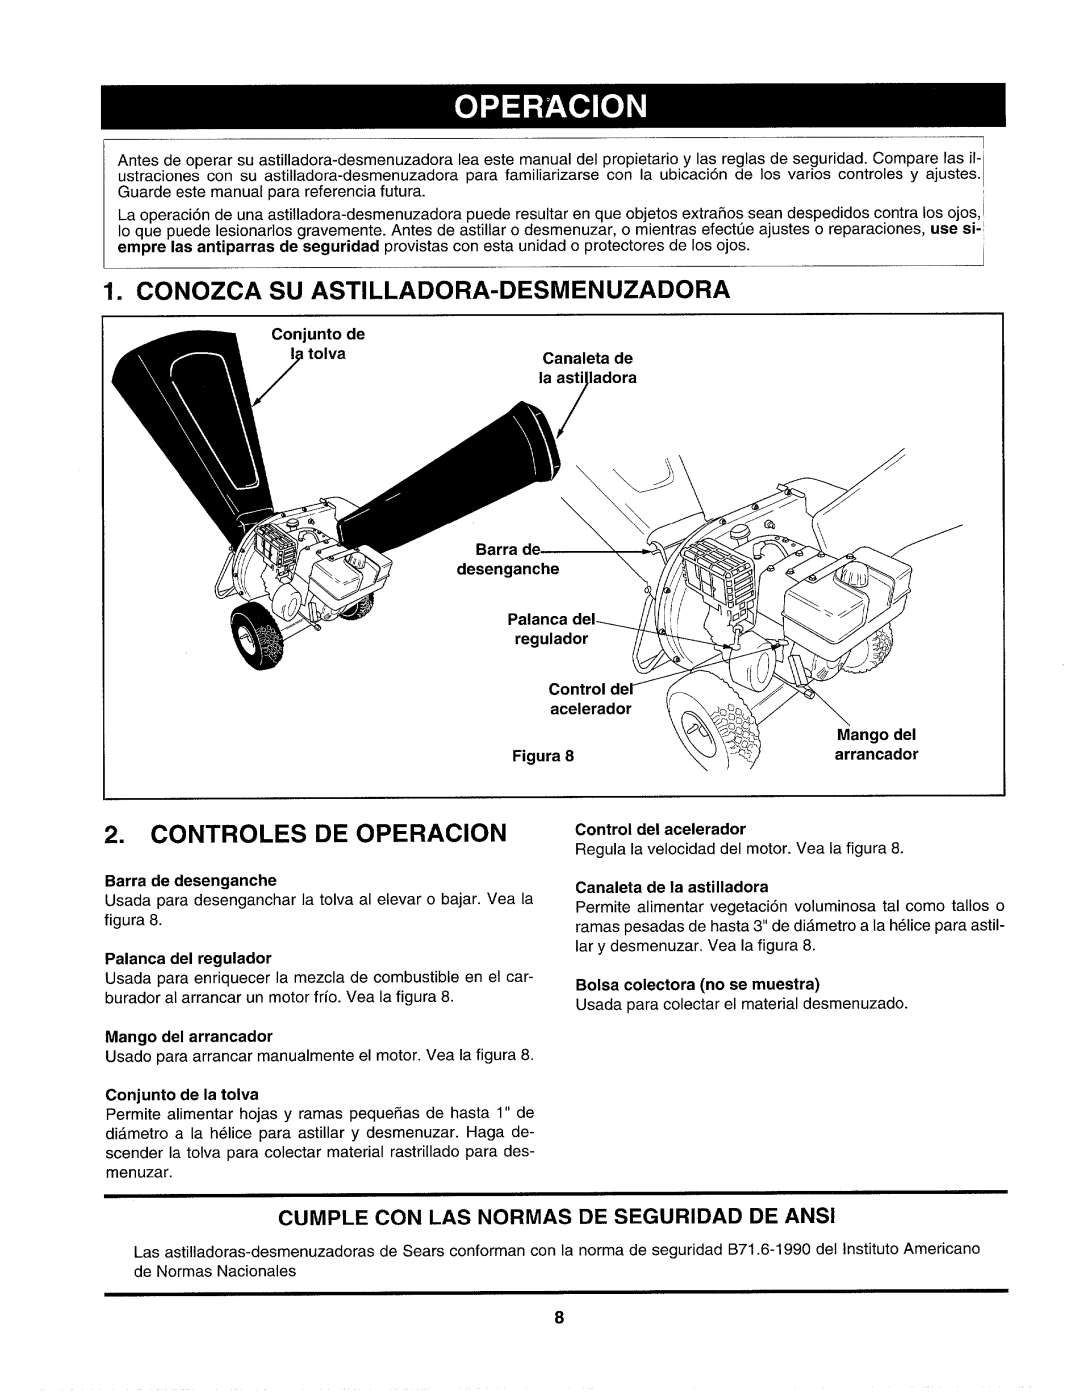 Craftsman 247.77586 Conozca Su Astilladora-Desmenuzadora, Controles De Operacion, Conjunto de, tolva, Canaleta de, Barra 